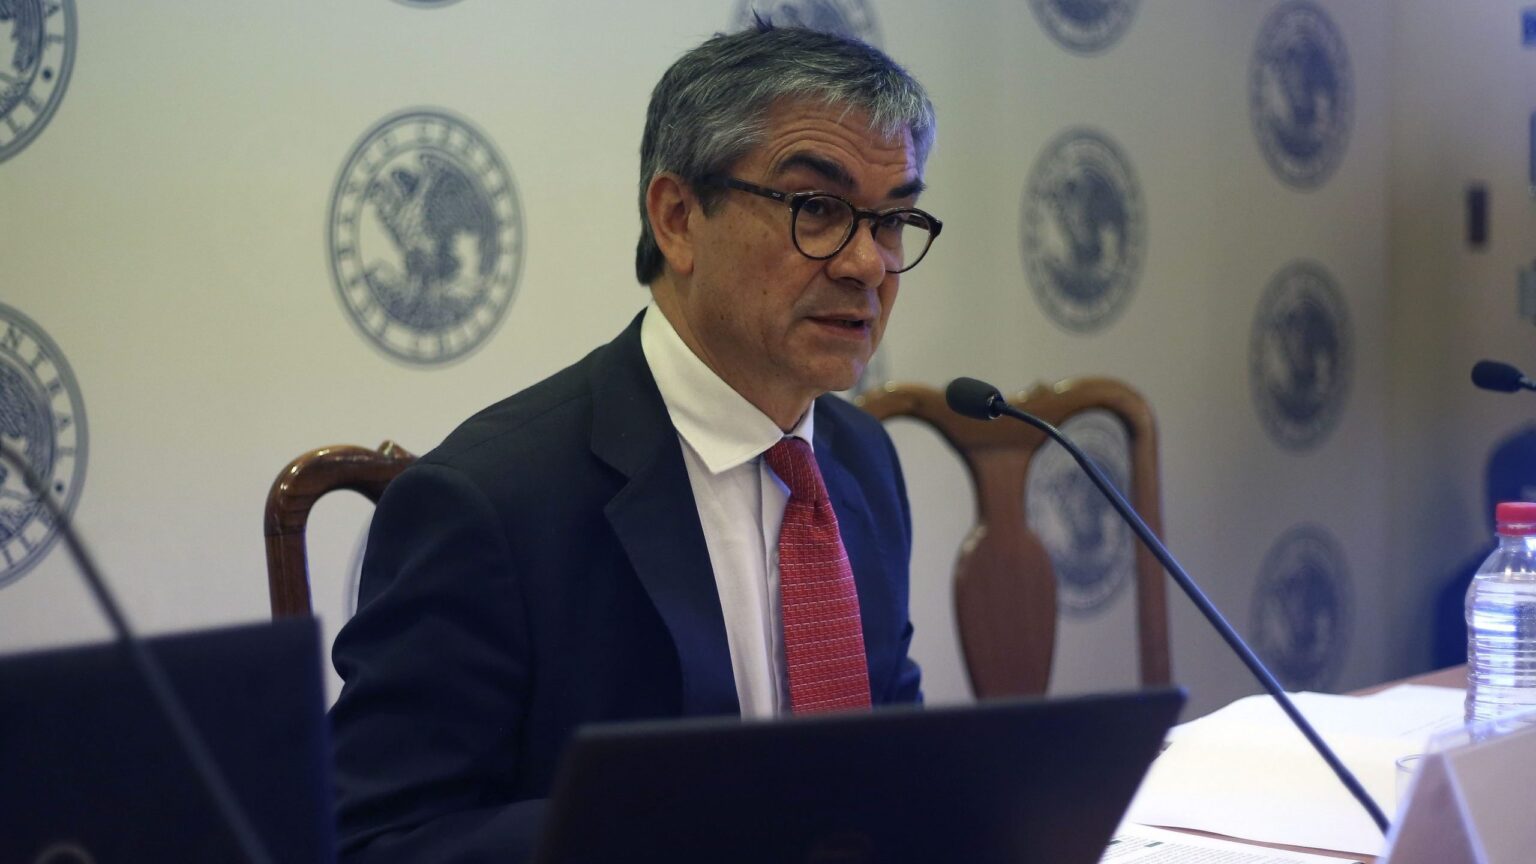 Los chilenos esperan más acción que palabras, afirma ministro